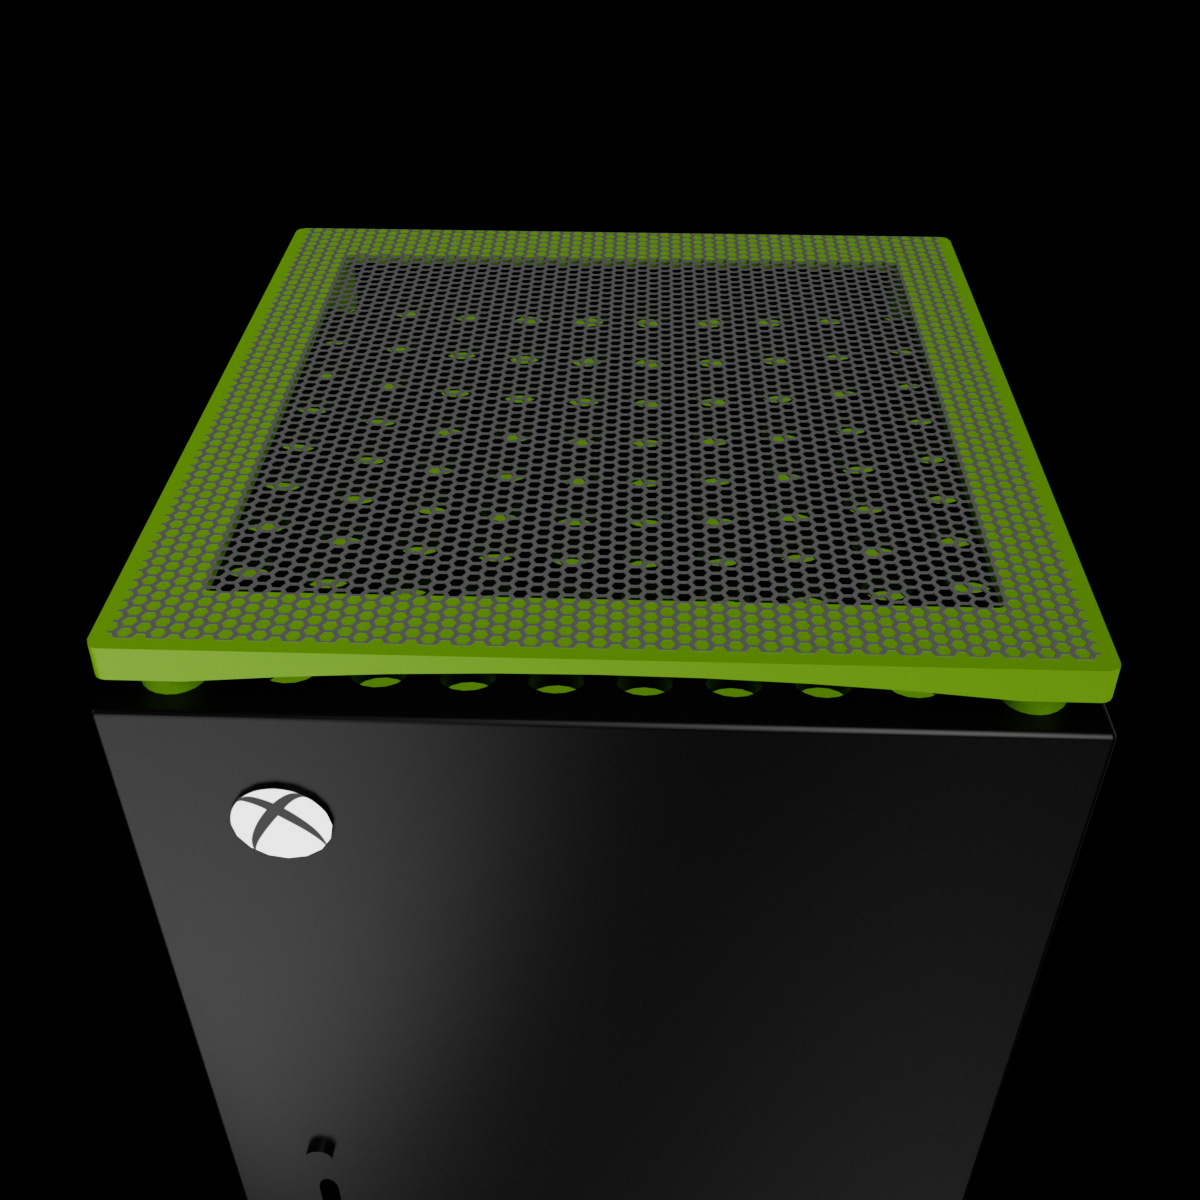 TADOW Staubnetz Für Xbox, und Grau Staubfilter-Kühlungsset, Multifunktionales Konsolenzubehör, Grün